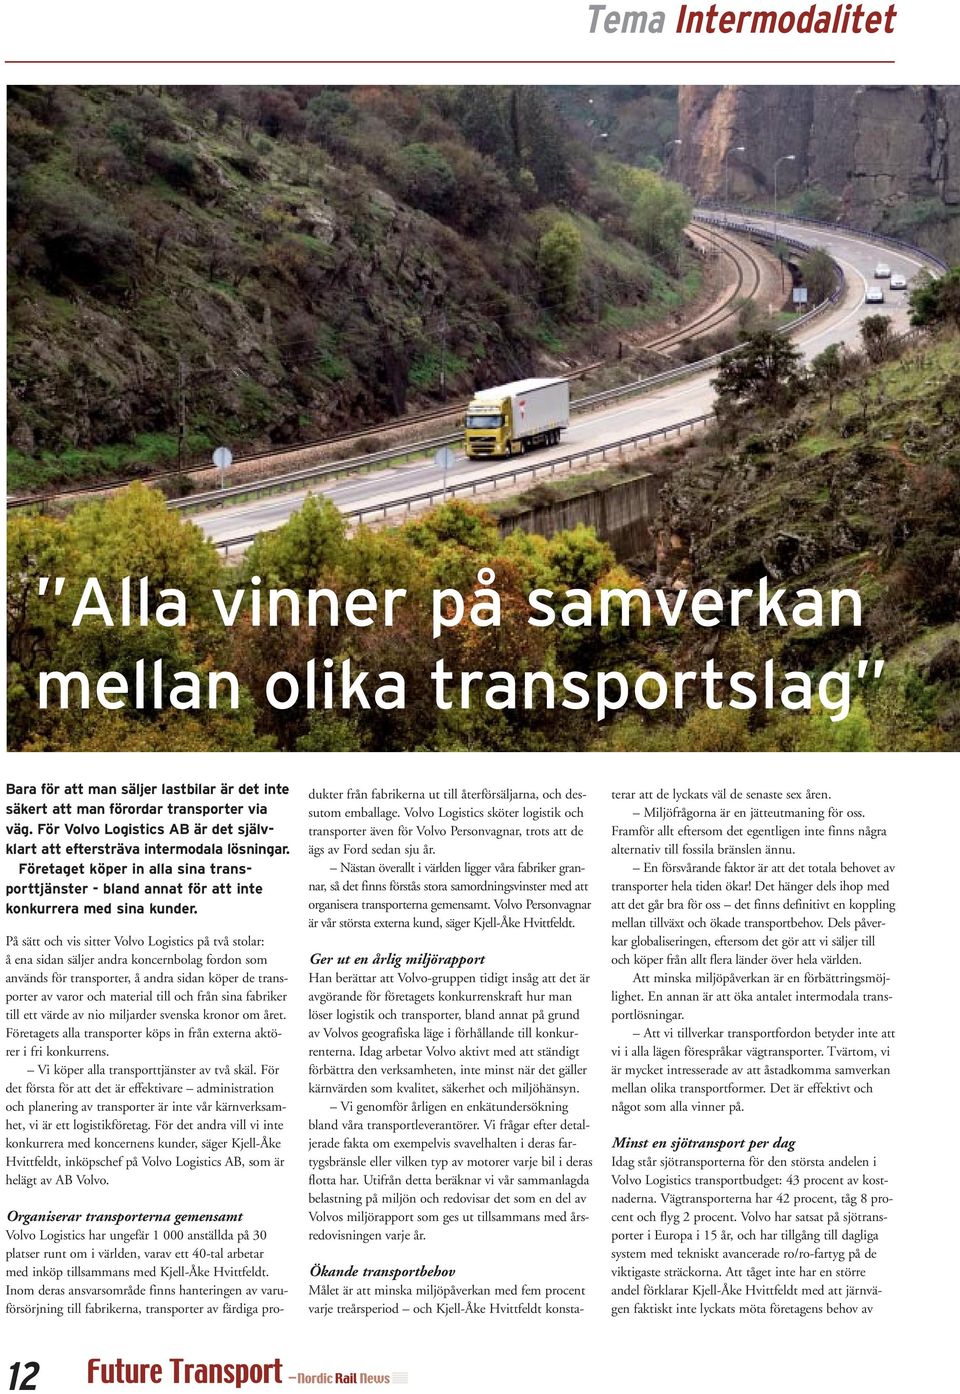 På sätt och vis sitter Volvo Logistics på två stolar: å ena sidan säljer andra koncernbolag fordon som används för transporter, å andra sidan köper de transporter av varor och material till och från